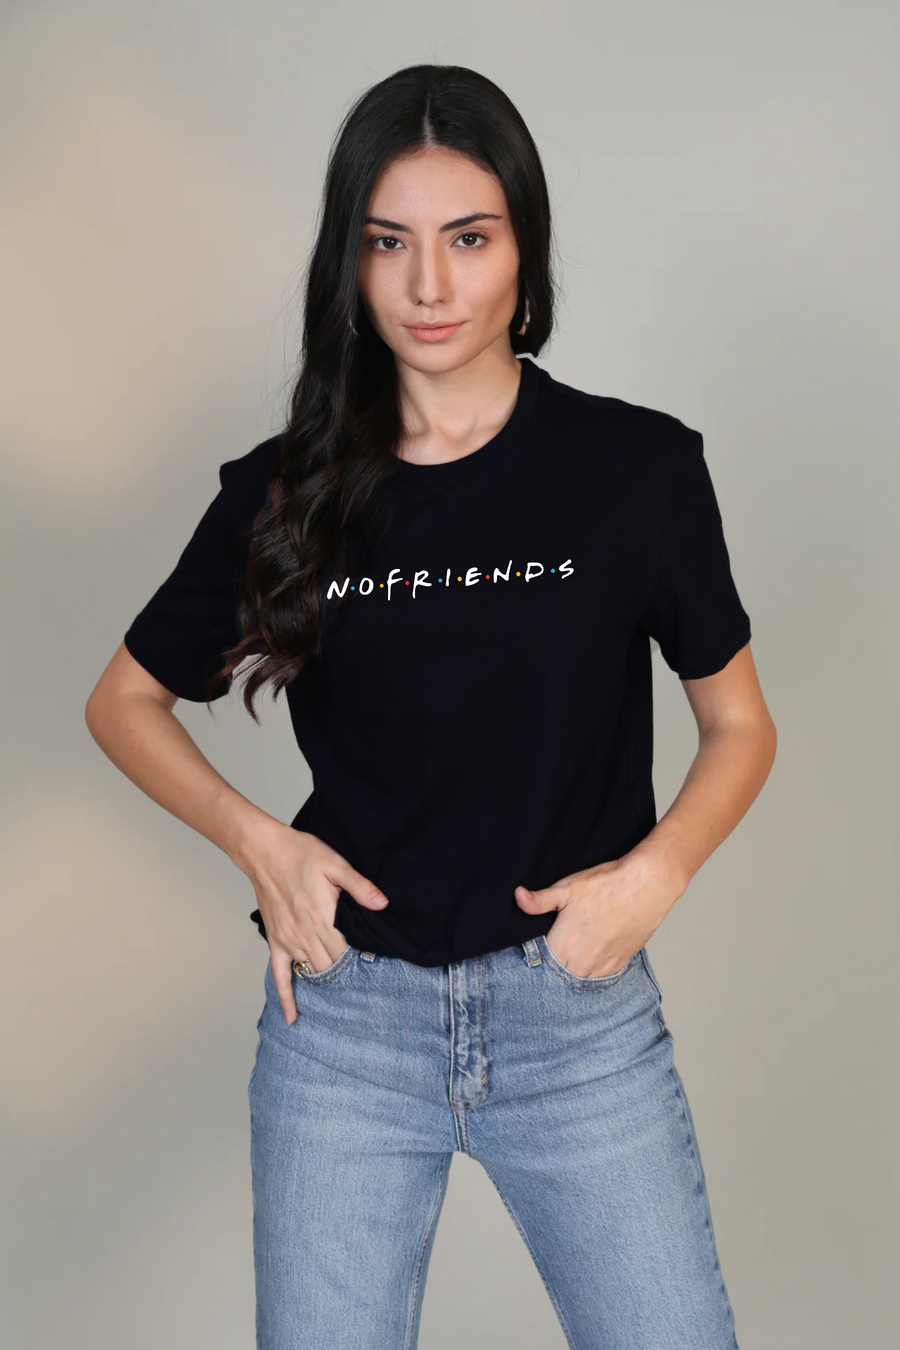 No Friends- Half sleeve t-shirt